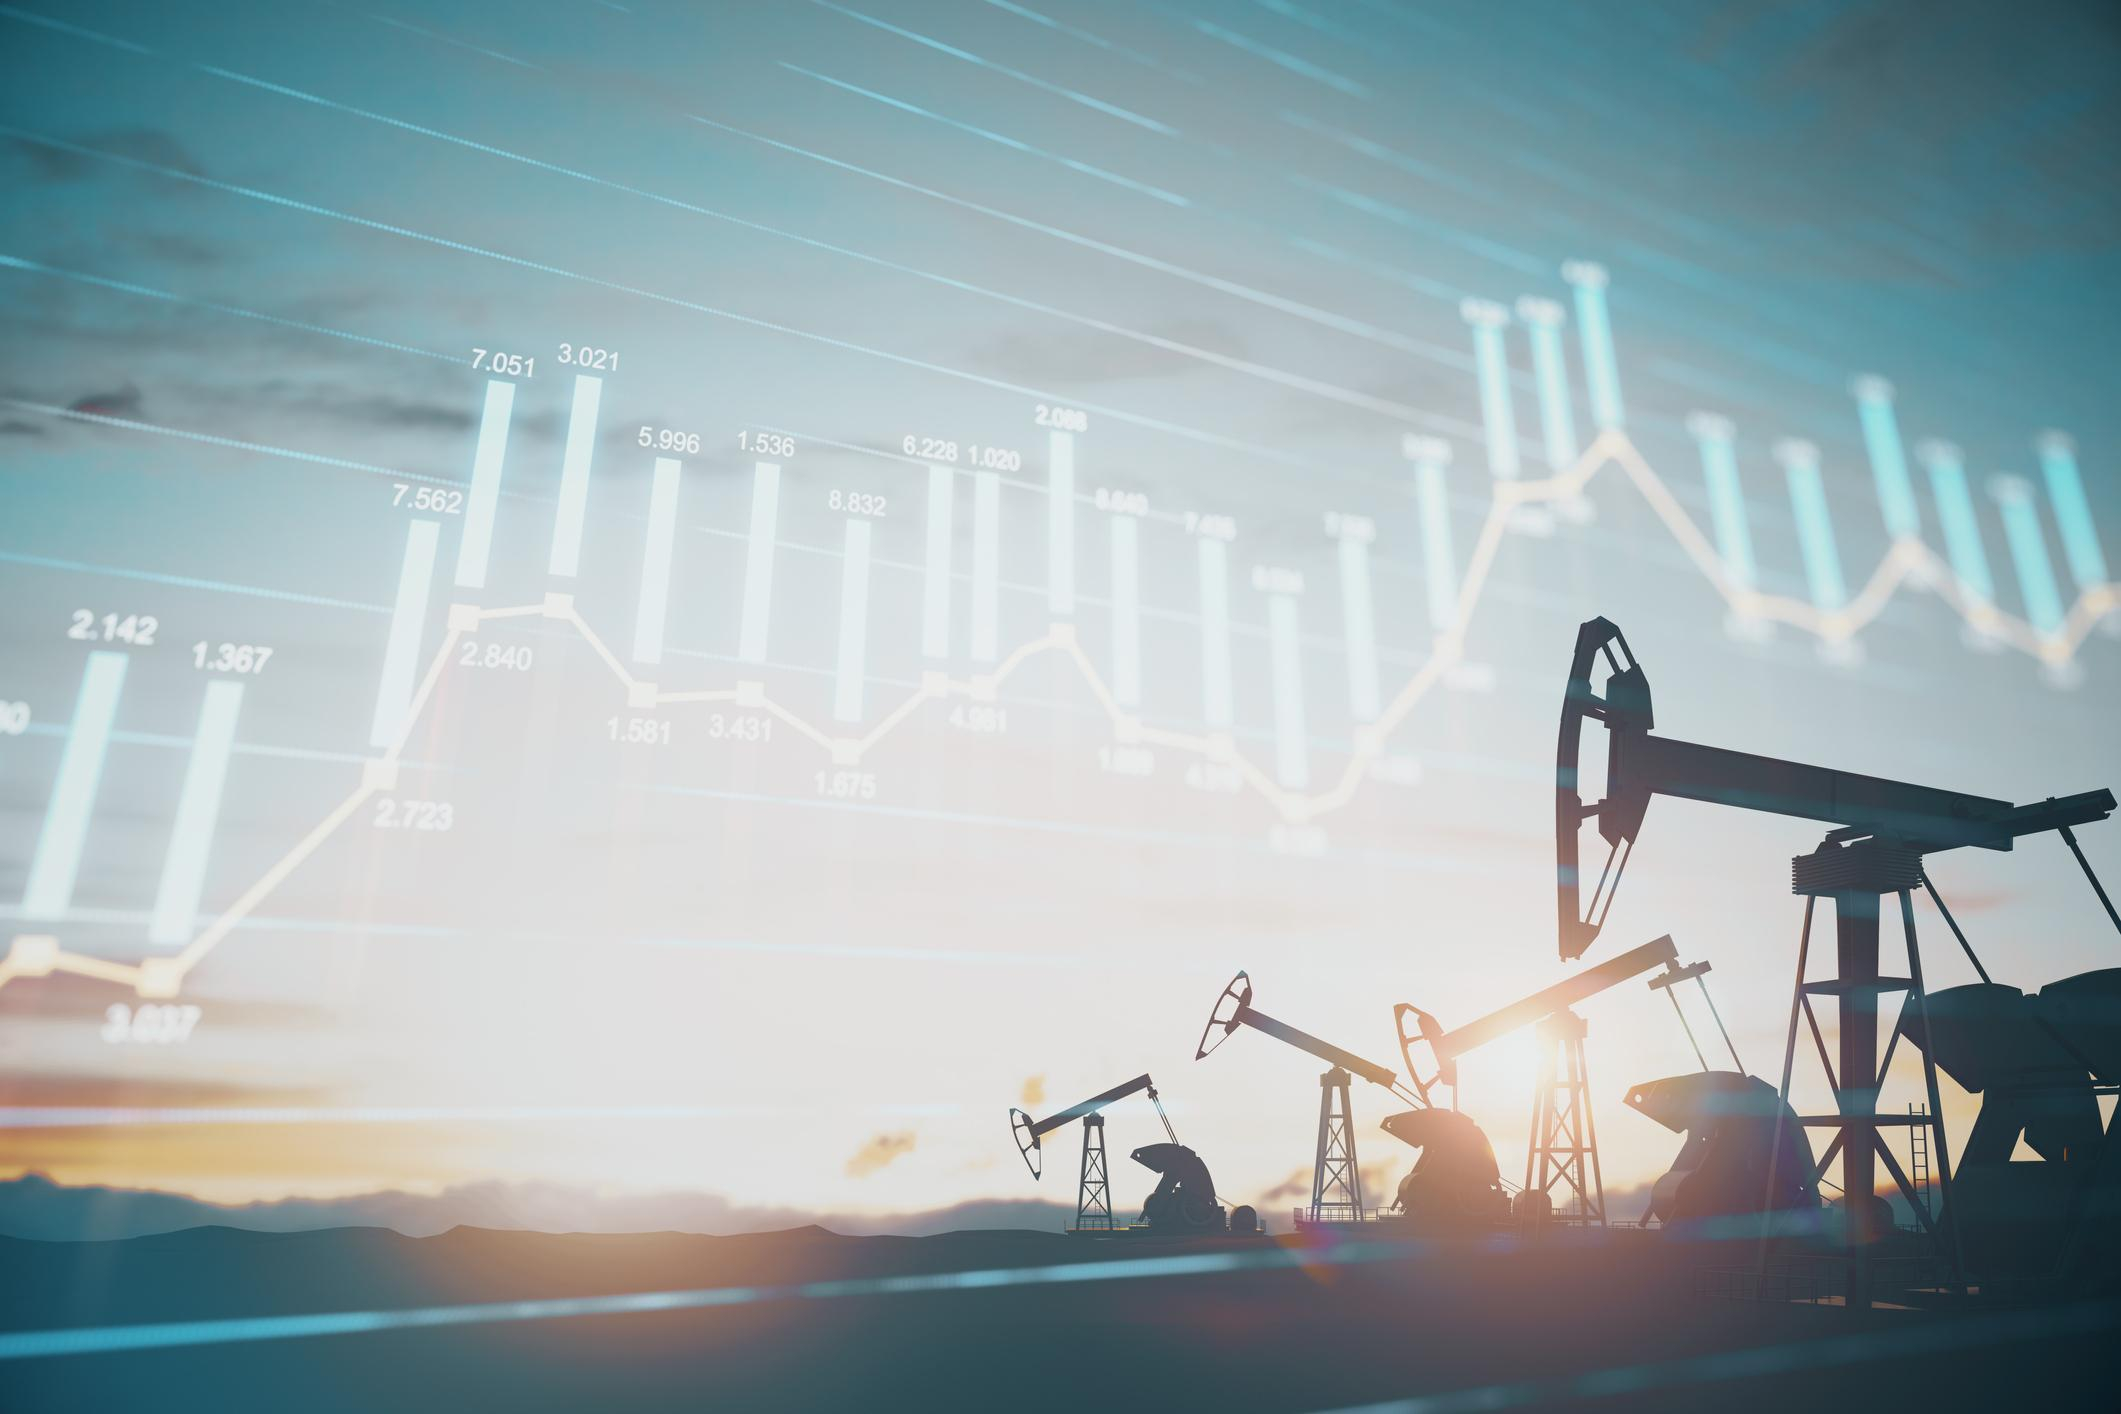 Цены на нефть Brent и WTI на 7 июля 2022 года